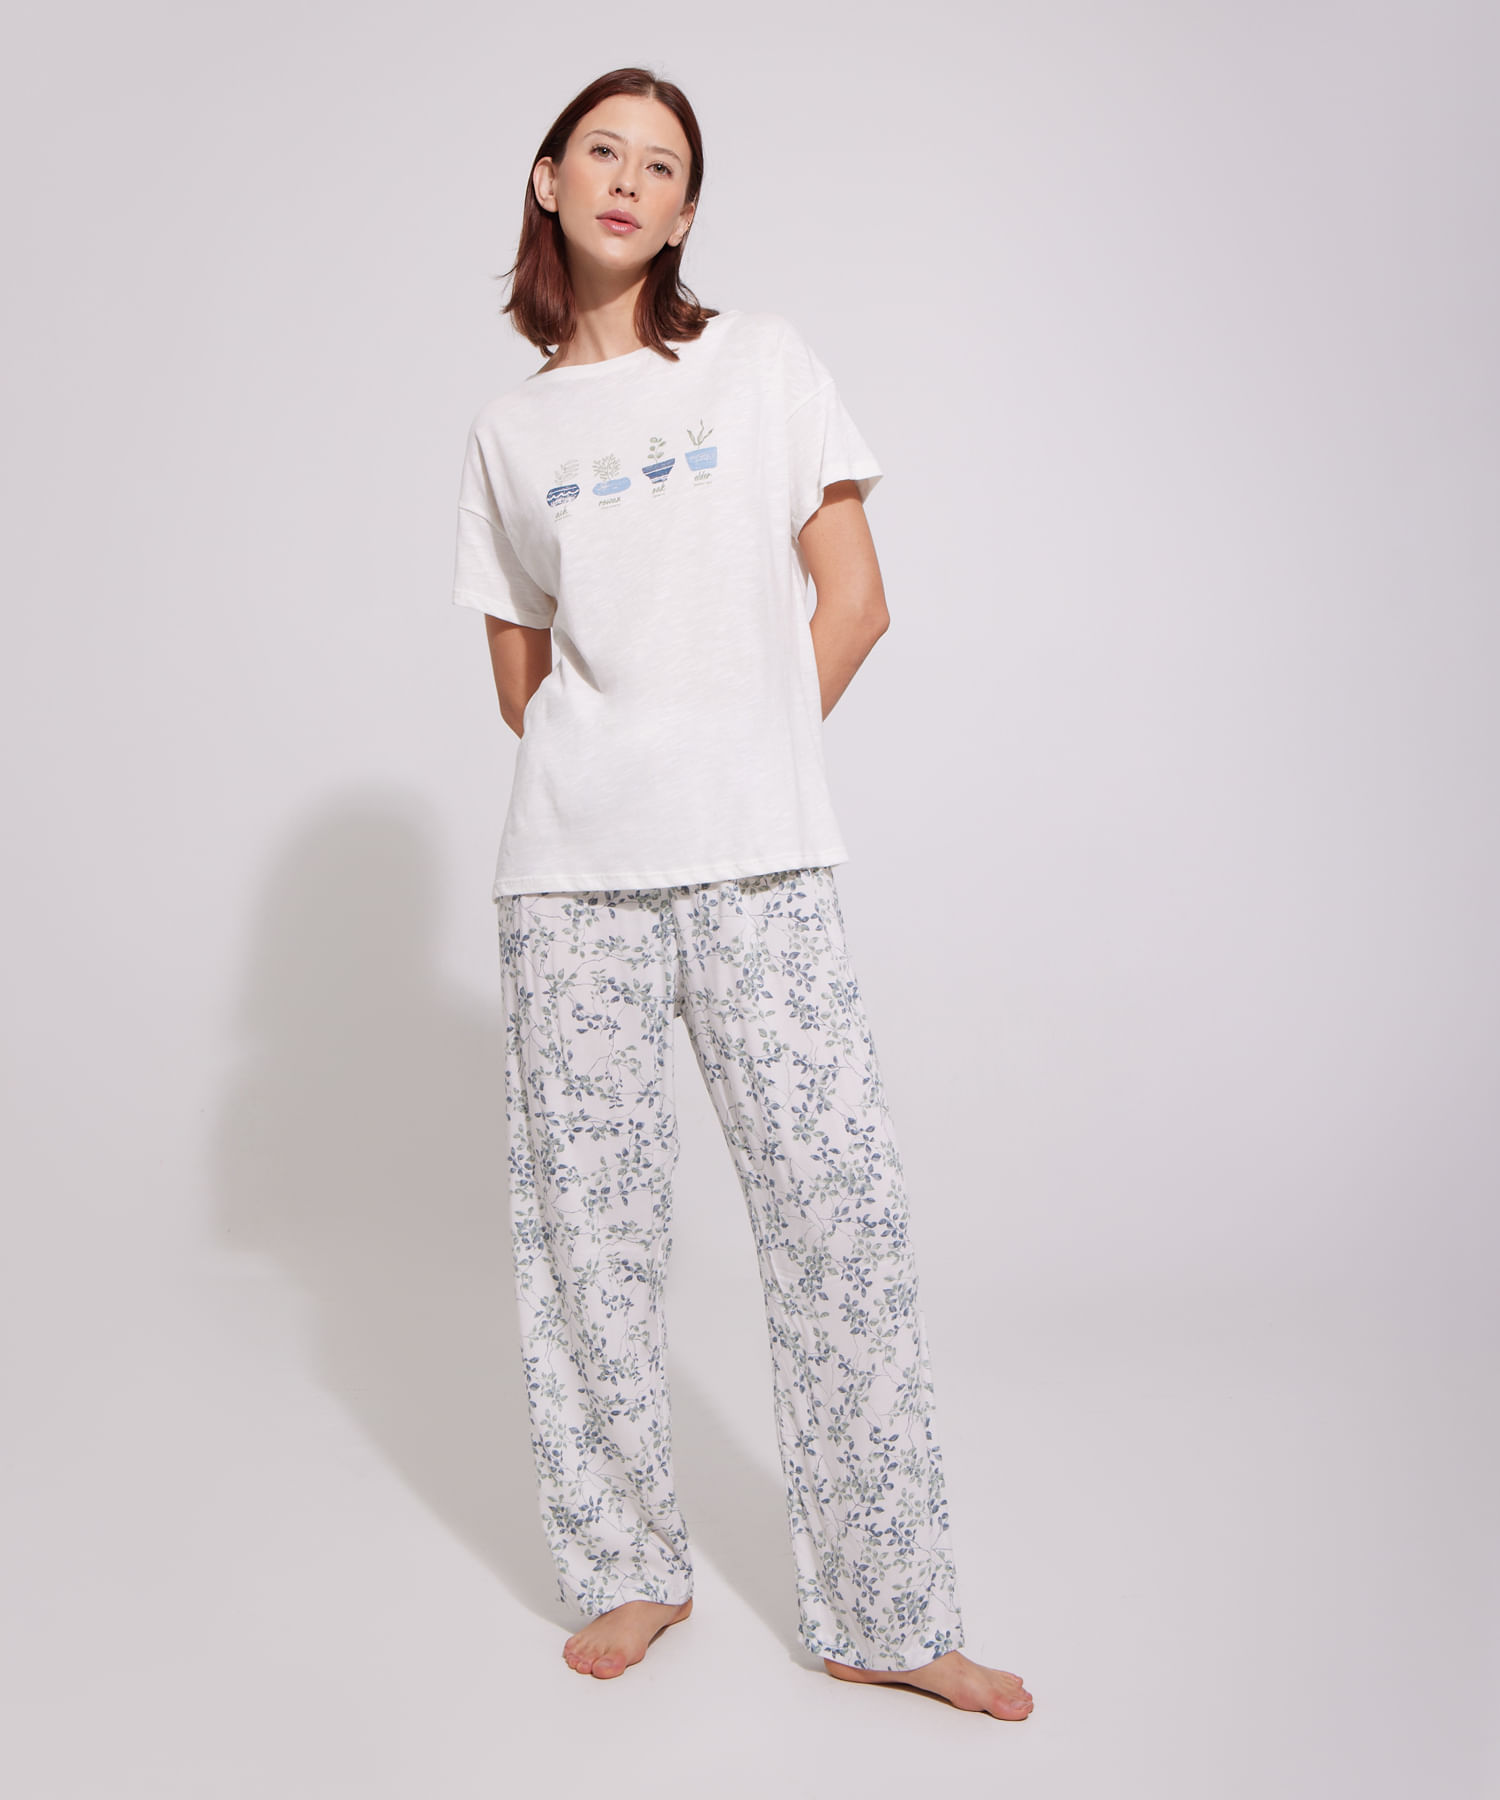 Pantalón de pijama para MI  Pantalones de pijama, Pantalones, Pijamas mujer